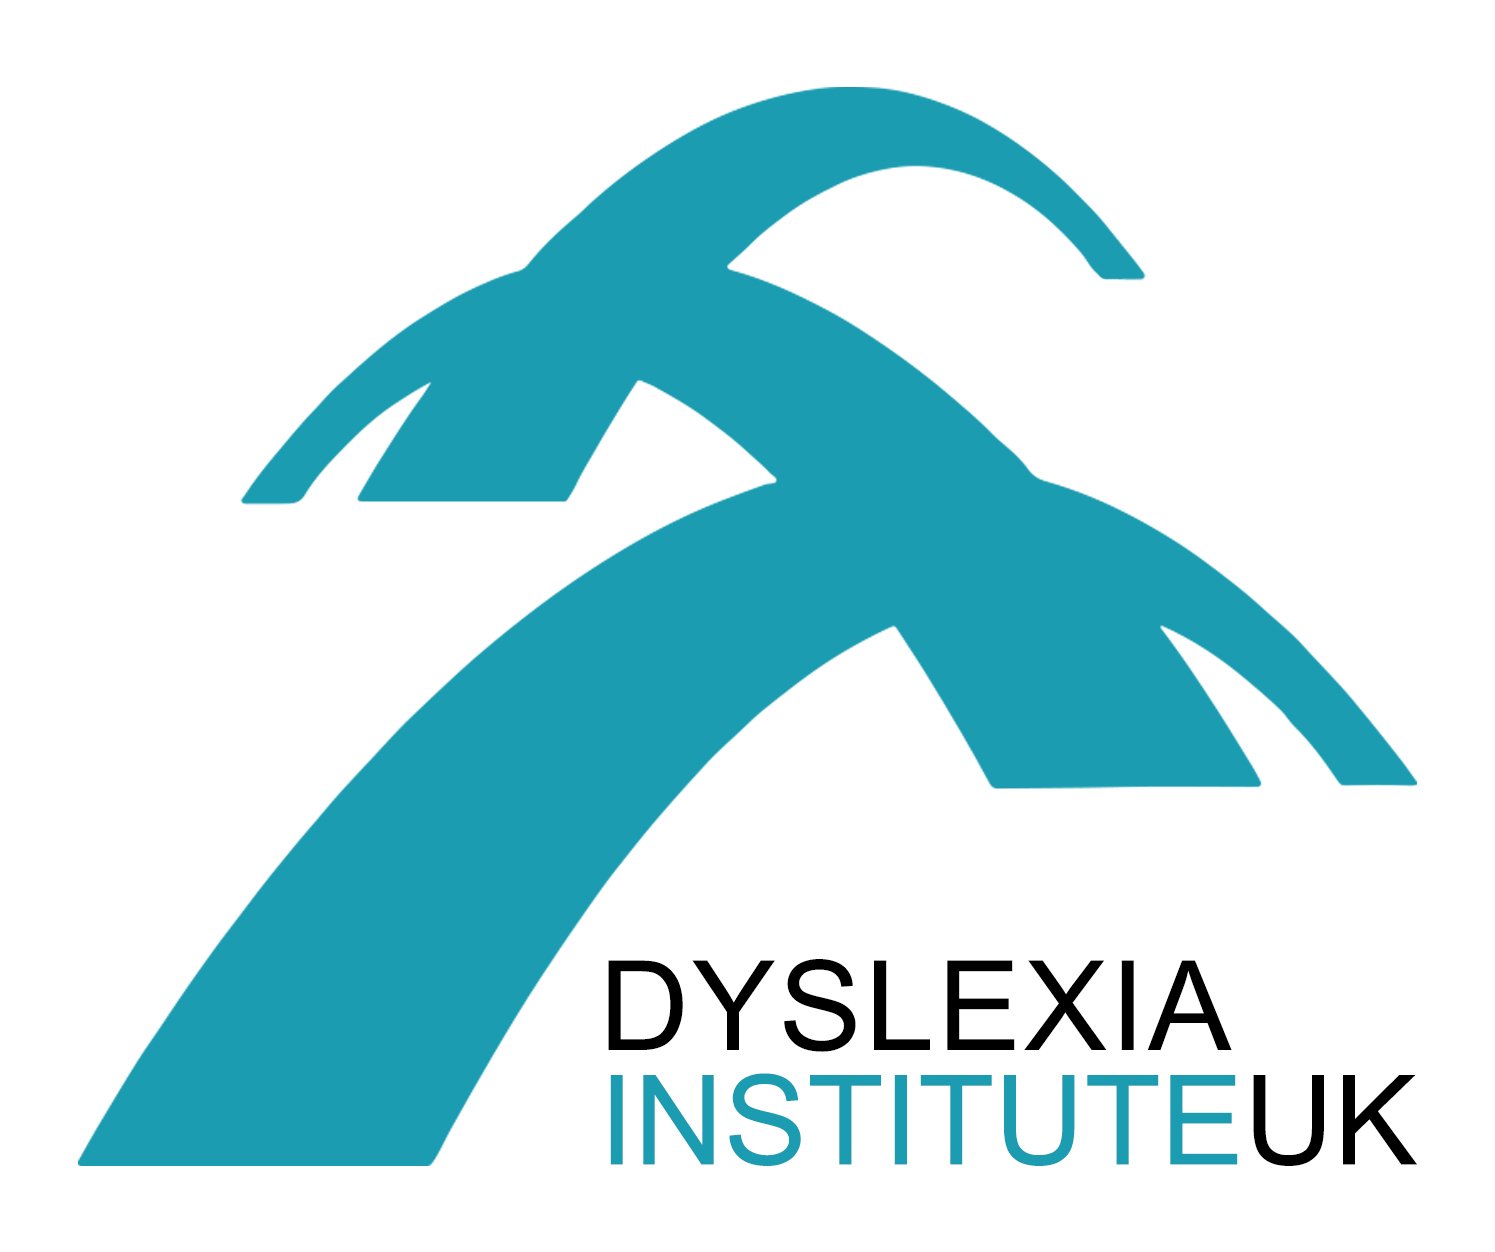 Logo Dys Institute UK.jpg